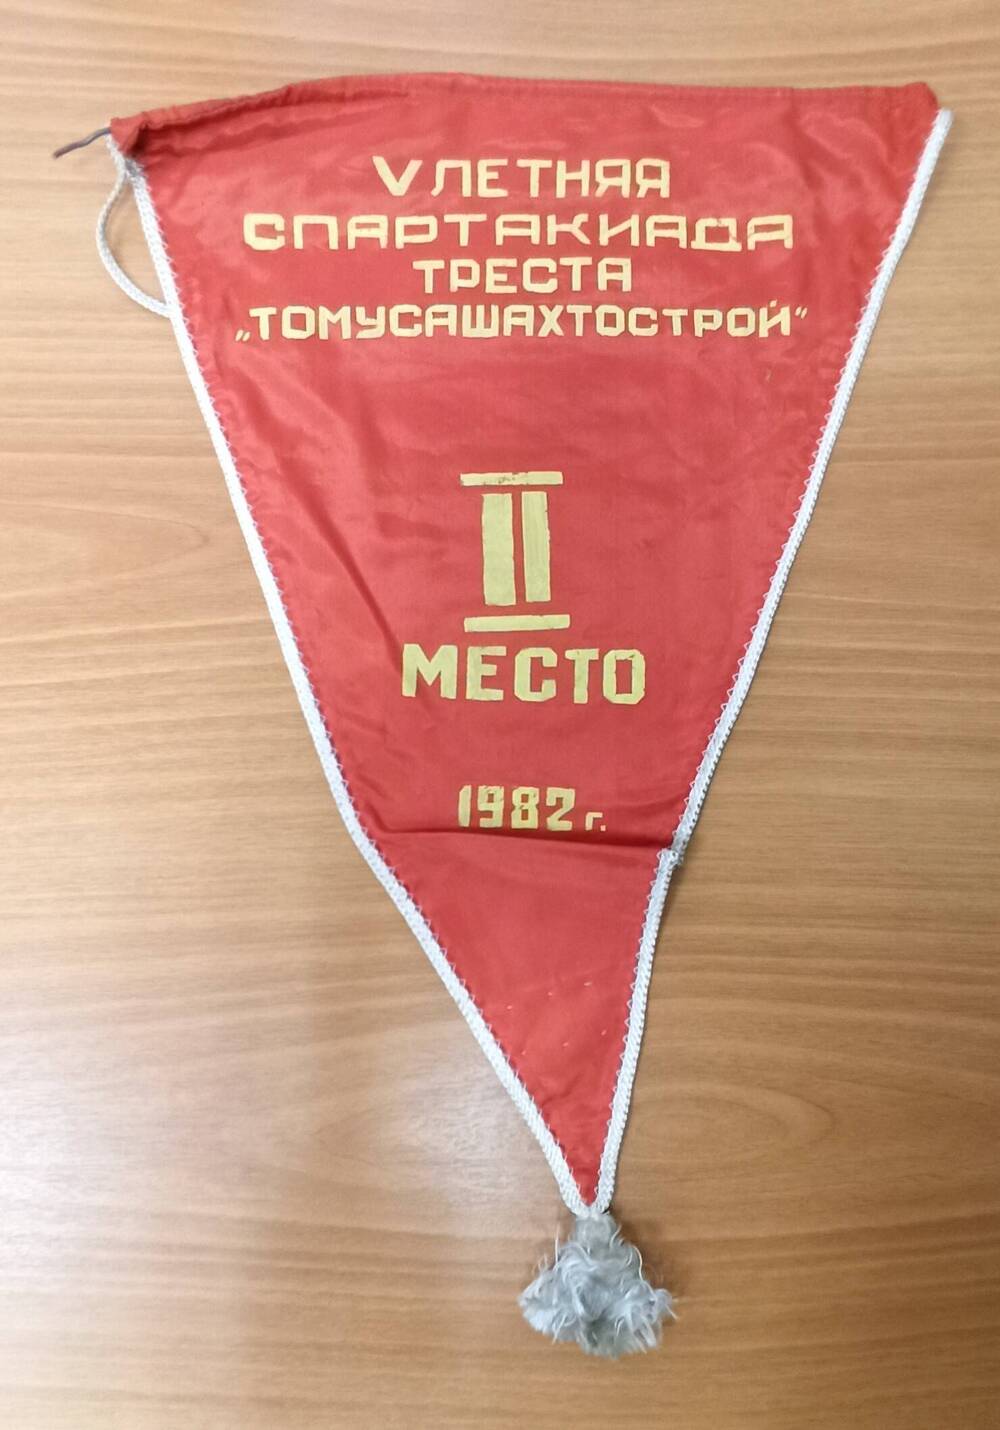 Вымпел V-летняя спартакиада треста Томусашахтострой 2 место 1982 г.